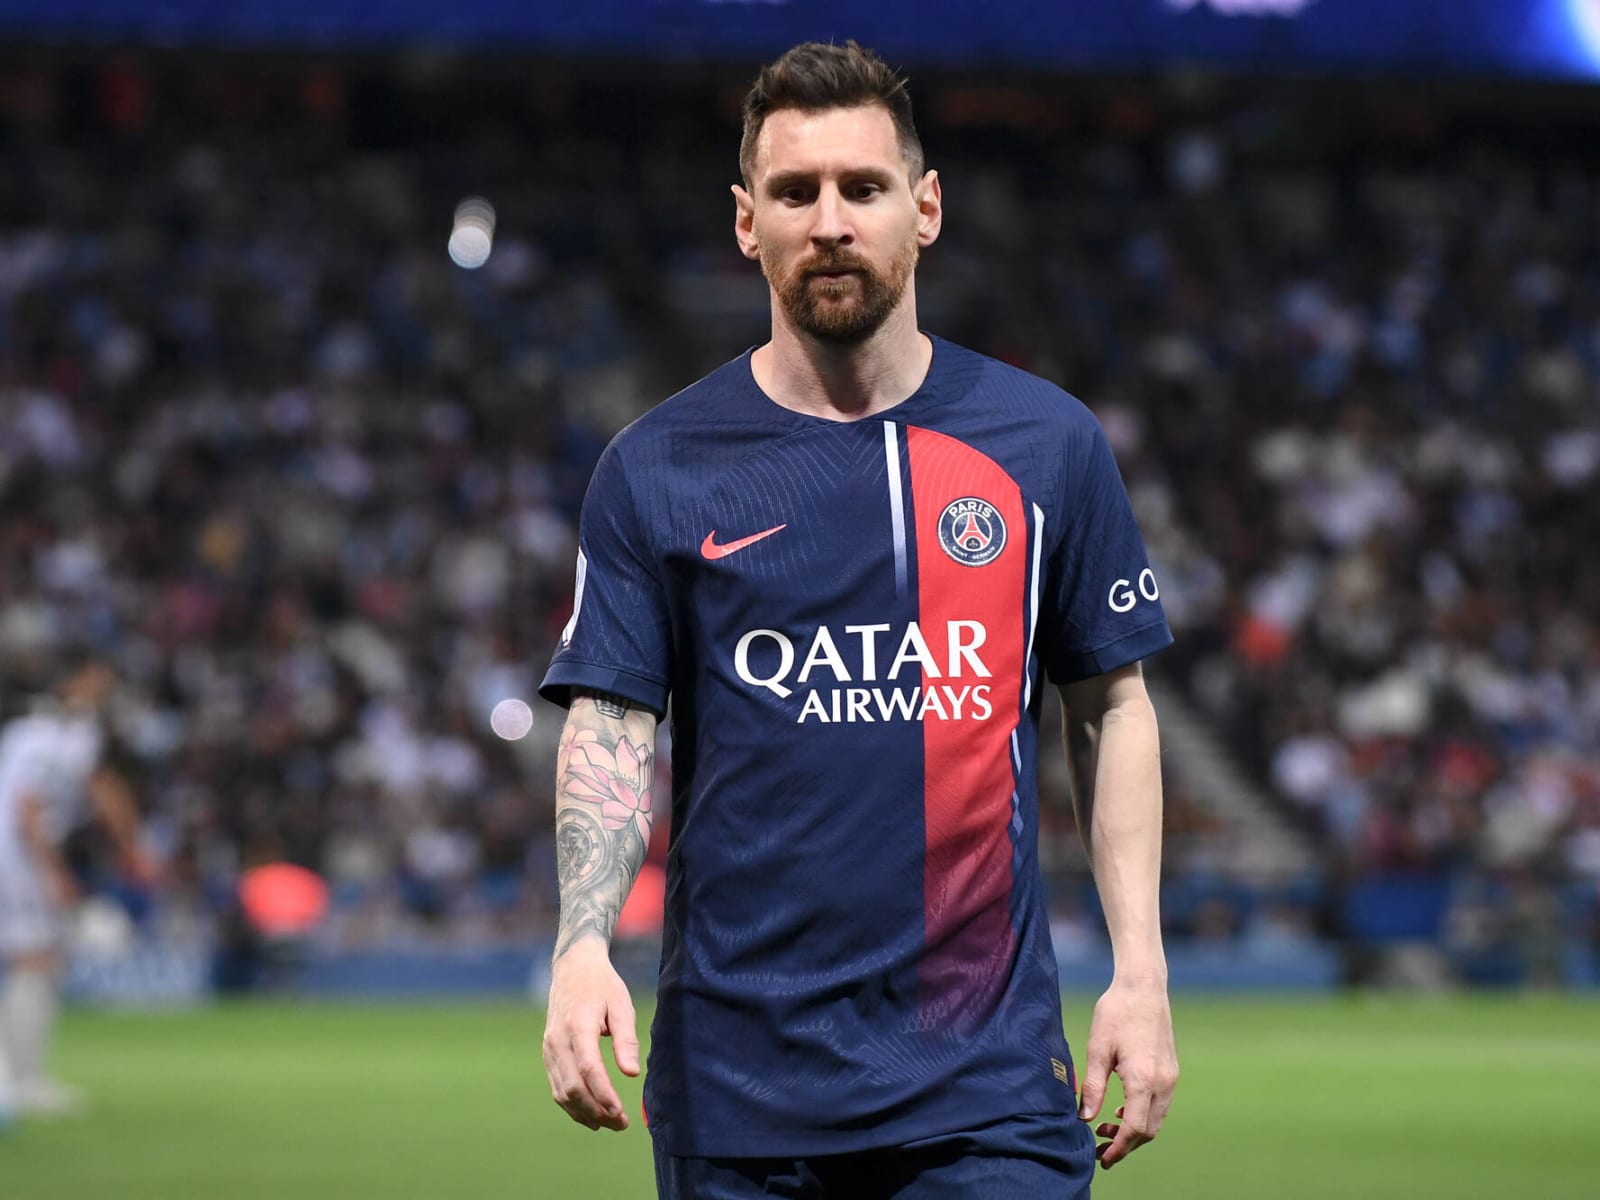 Lionel Messi picks MLS's Inter Miami in a move that stuns soccer